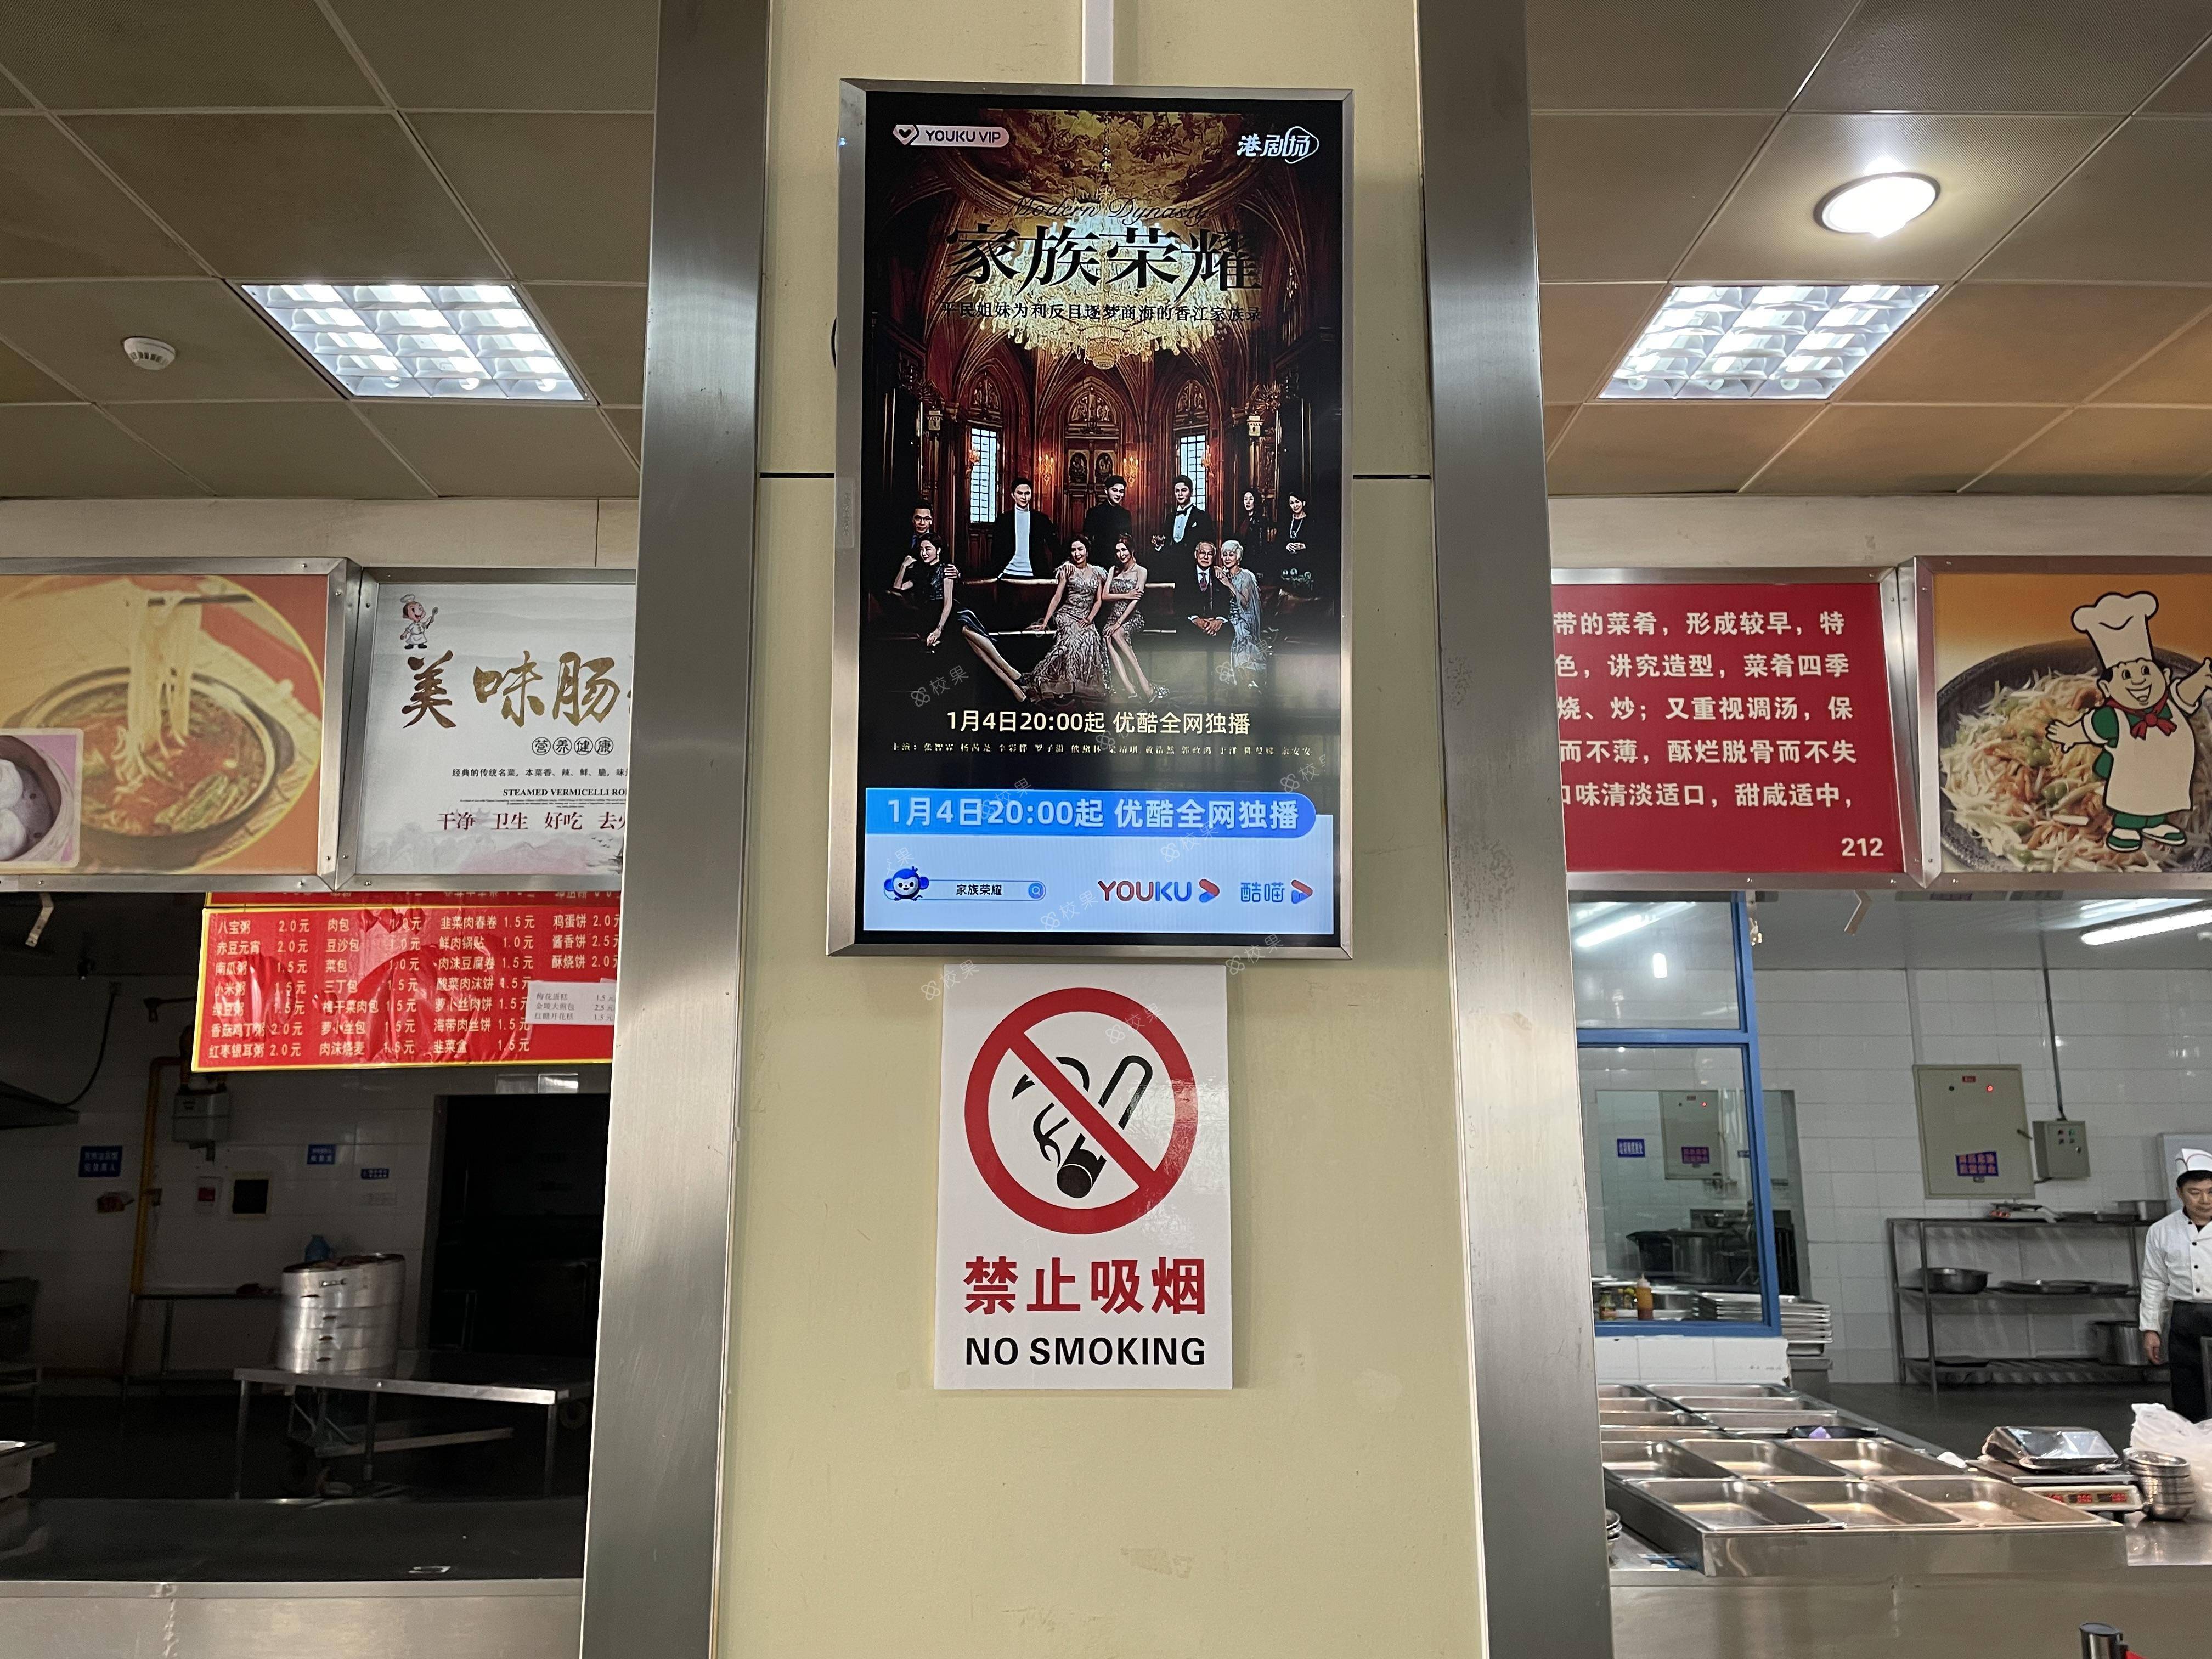 液晶屏广告 上海体育学院